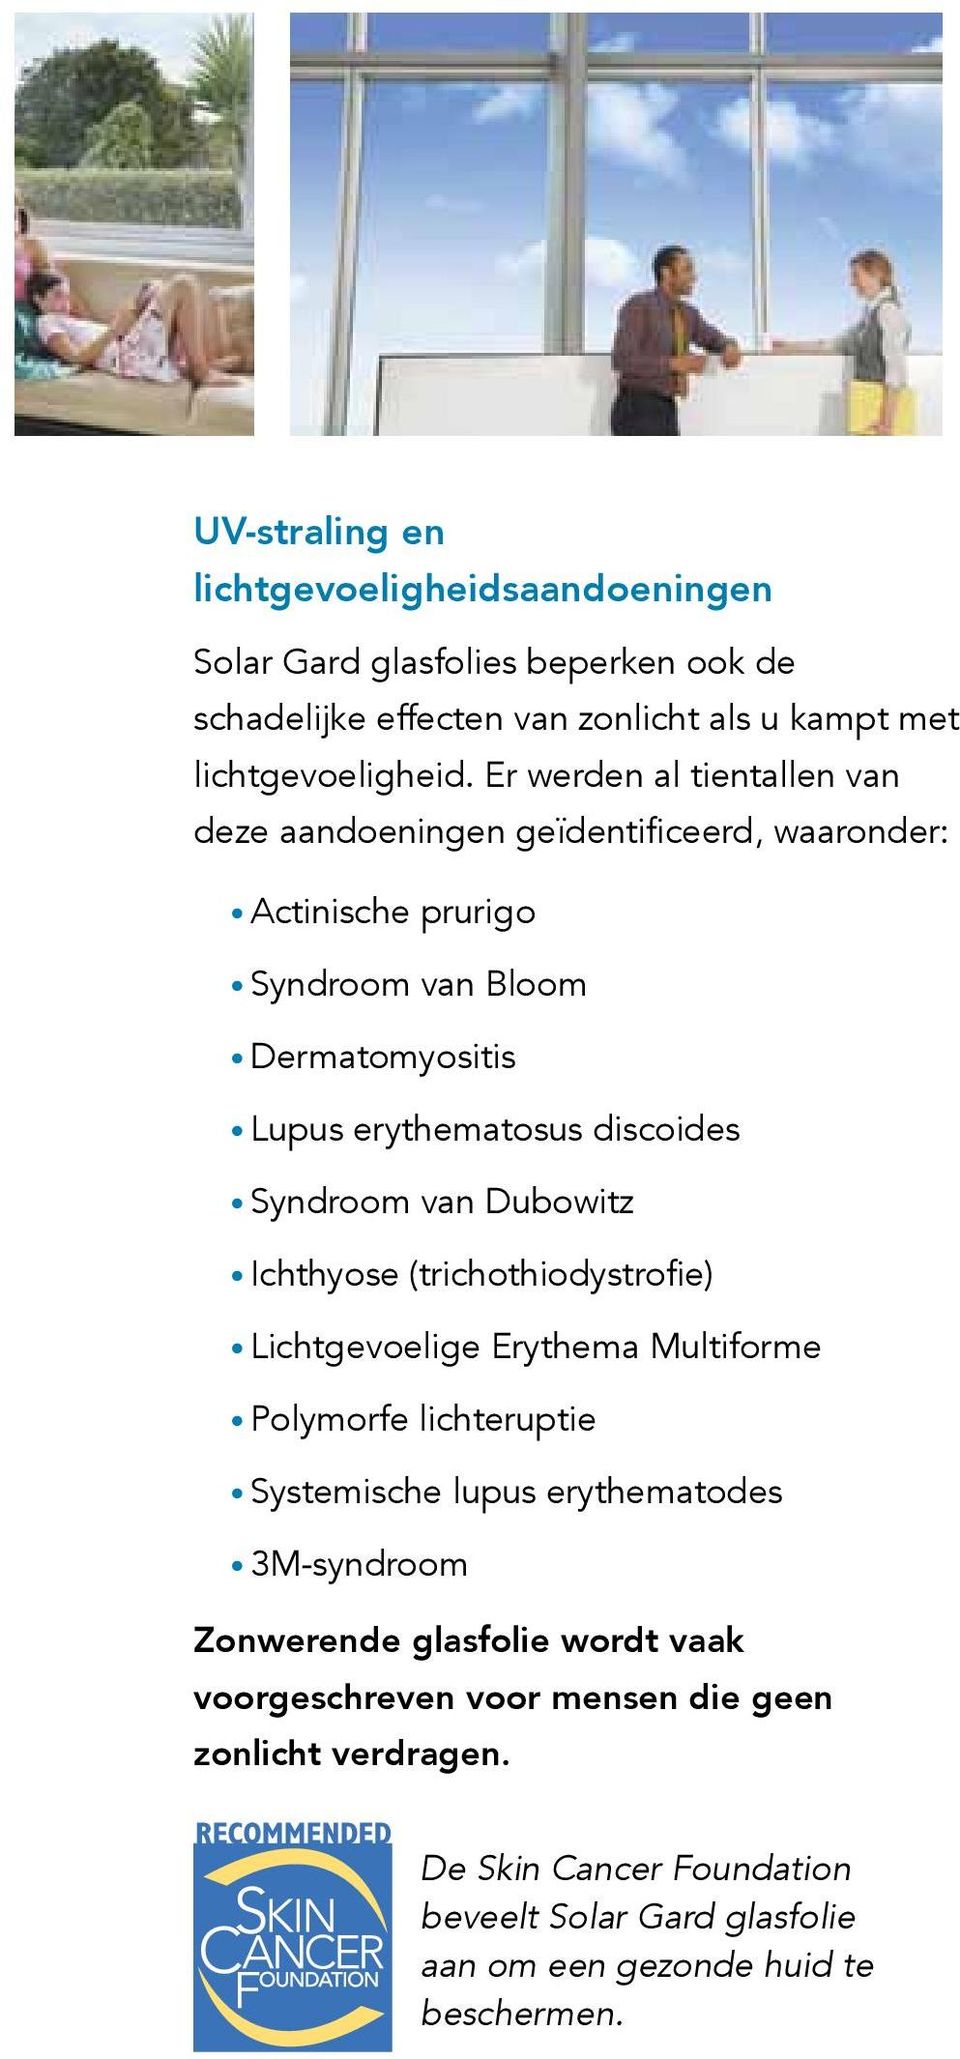 Syndroom van Dubowitz Ichthyose (trichothiodystrofie) Lichtgevoelige Erythema Multiforme Polymorfe lichteruptie Systemische lupus erythematodes 3M-syndroom